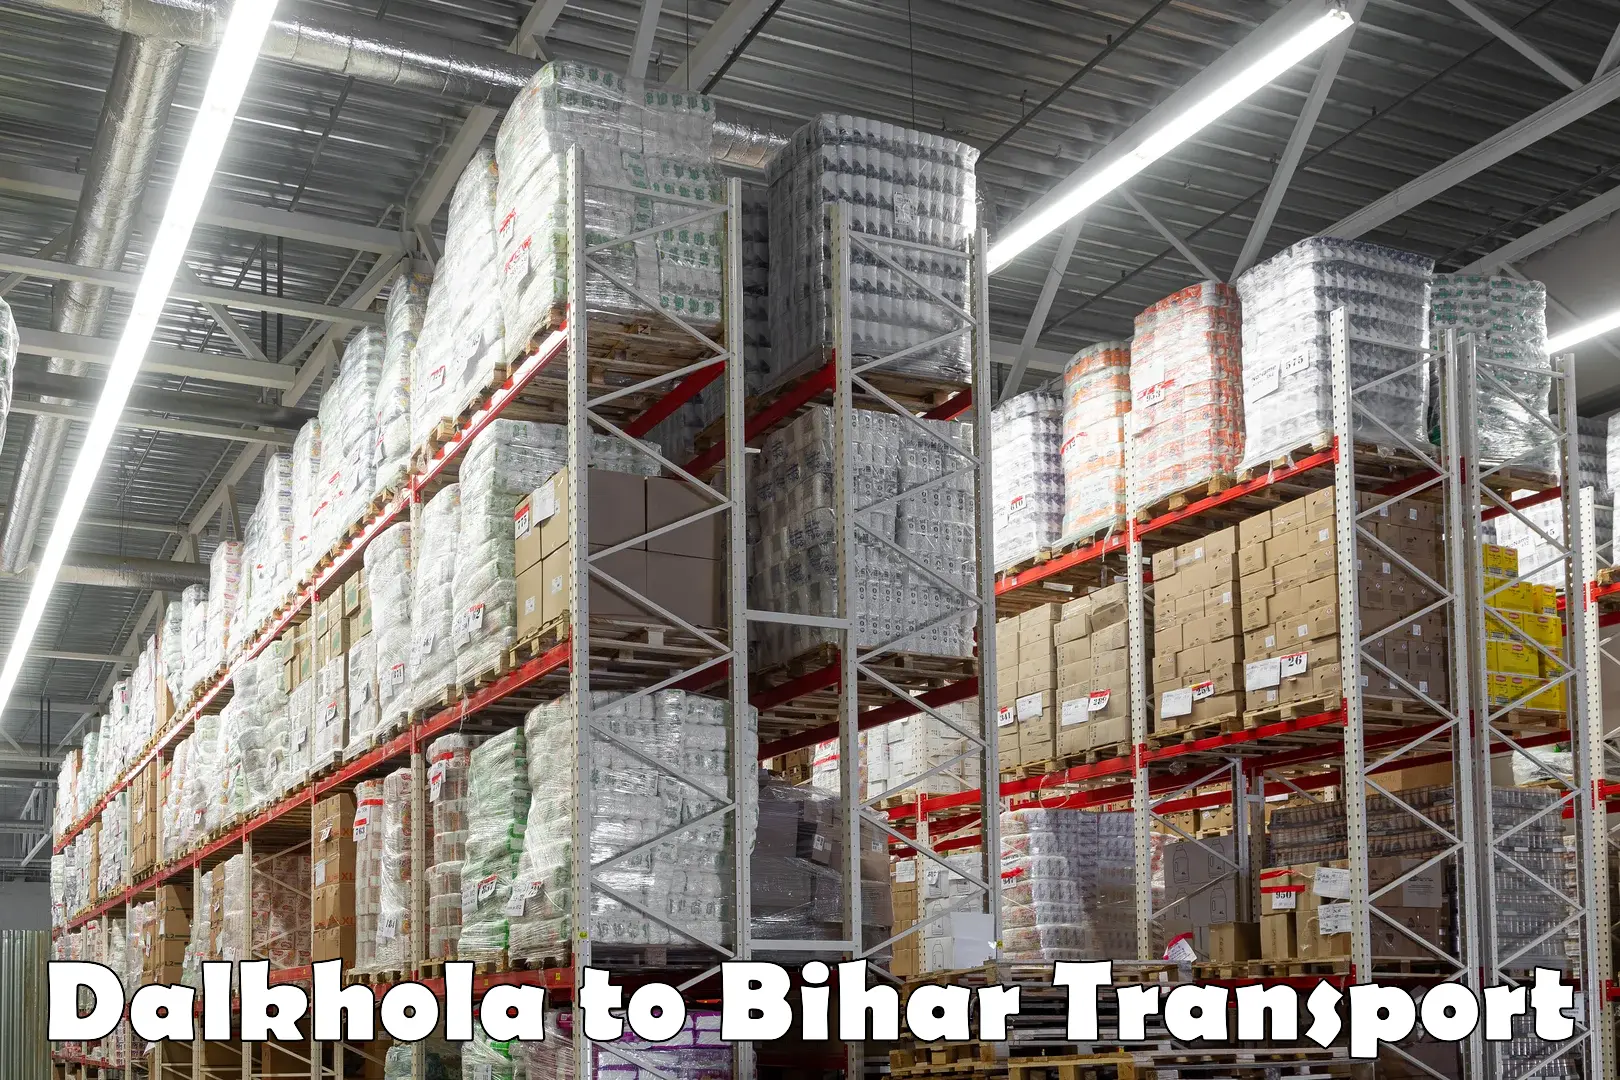 Furniture transport service in Dalkhola to Bihar